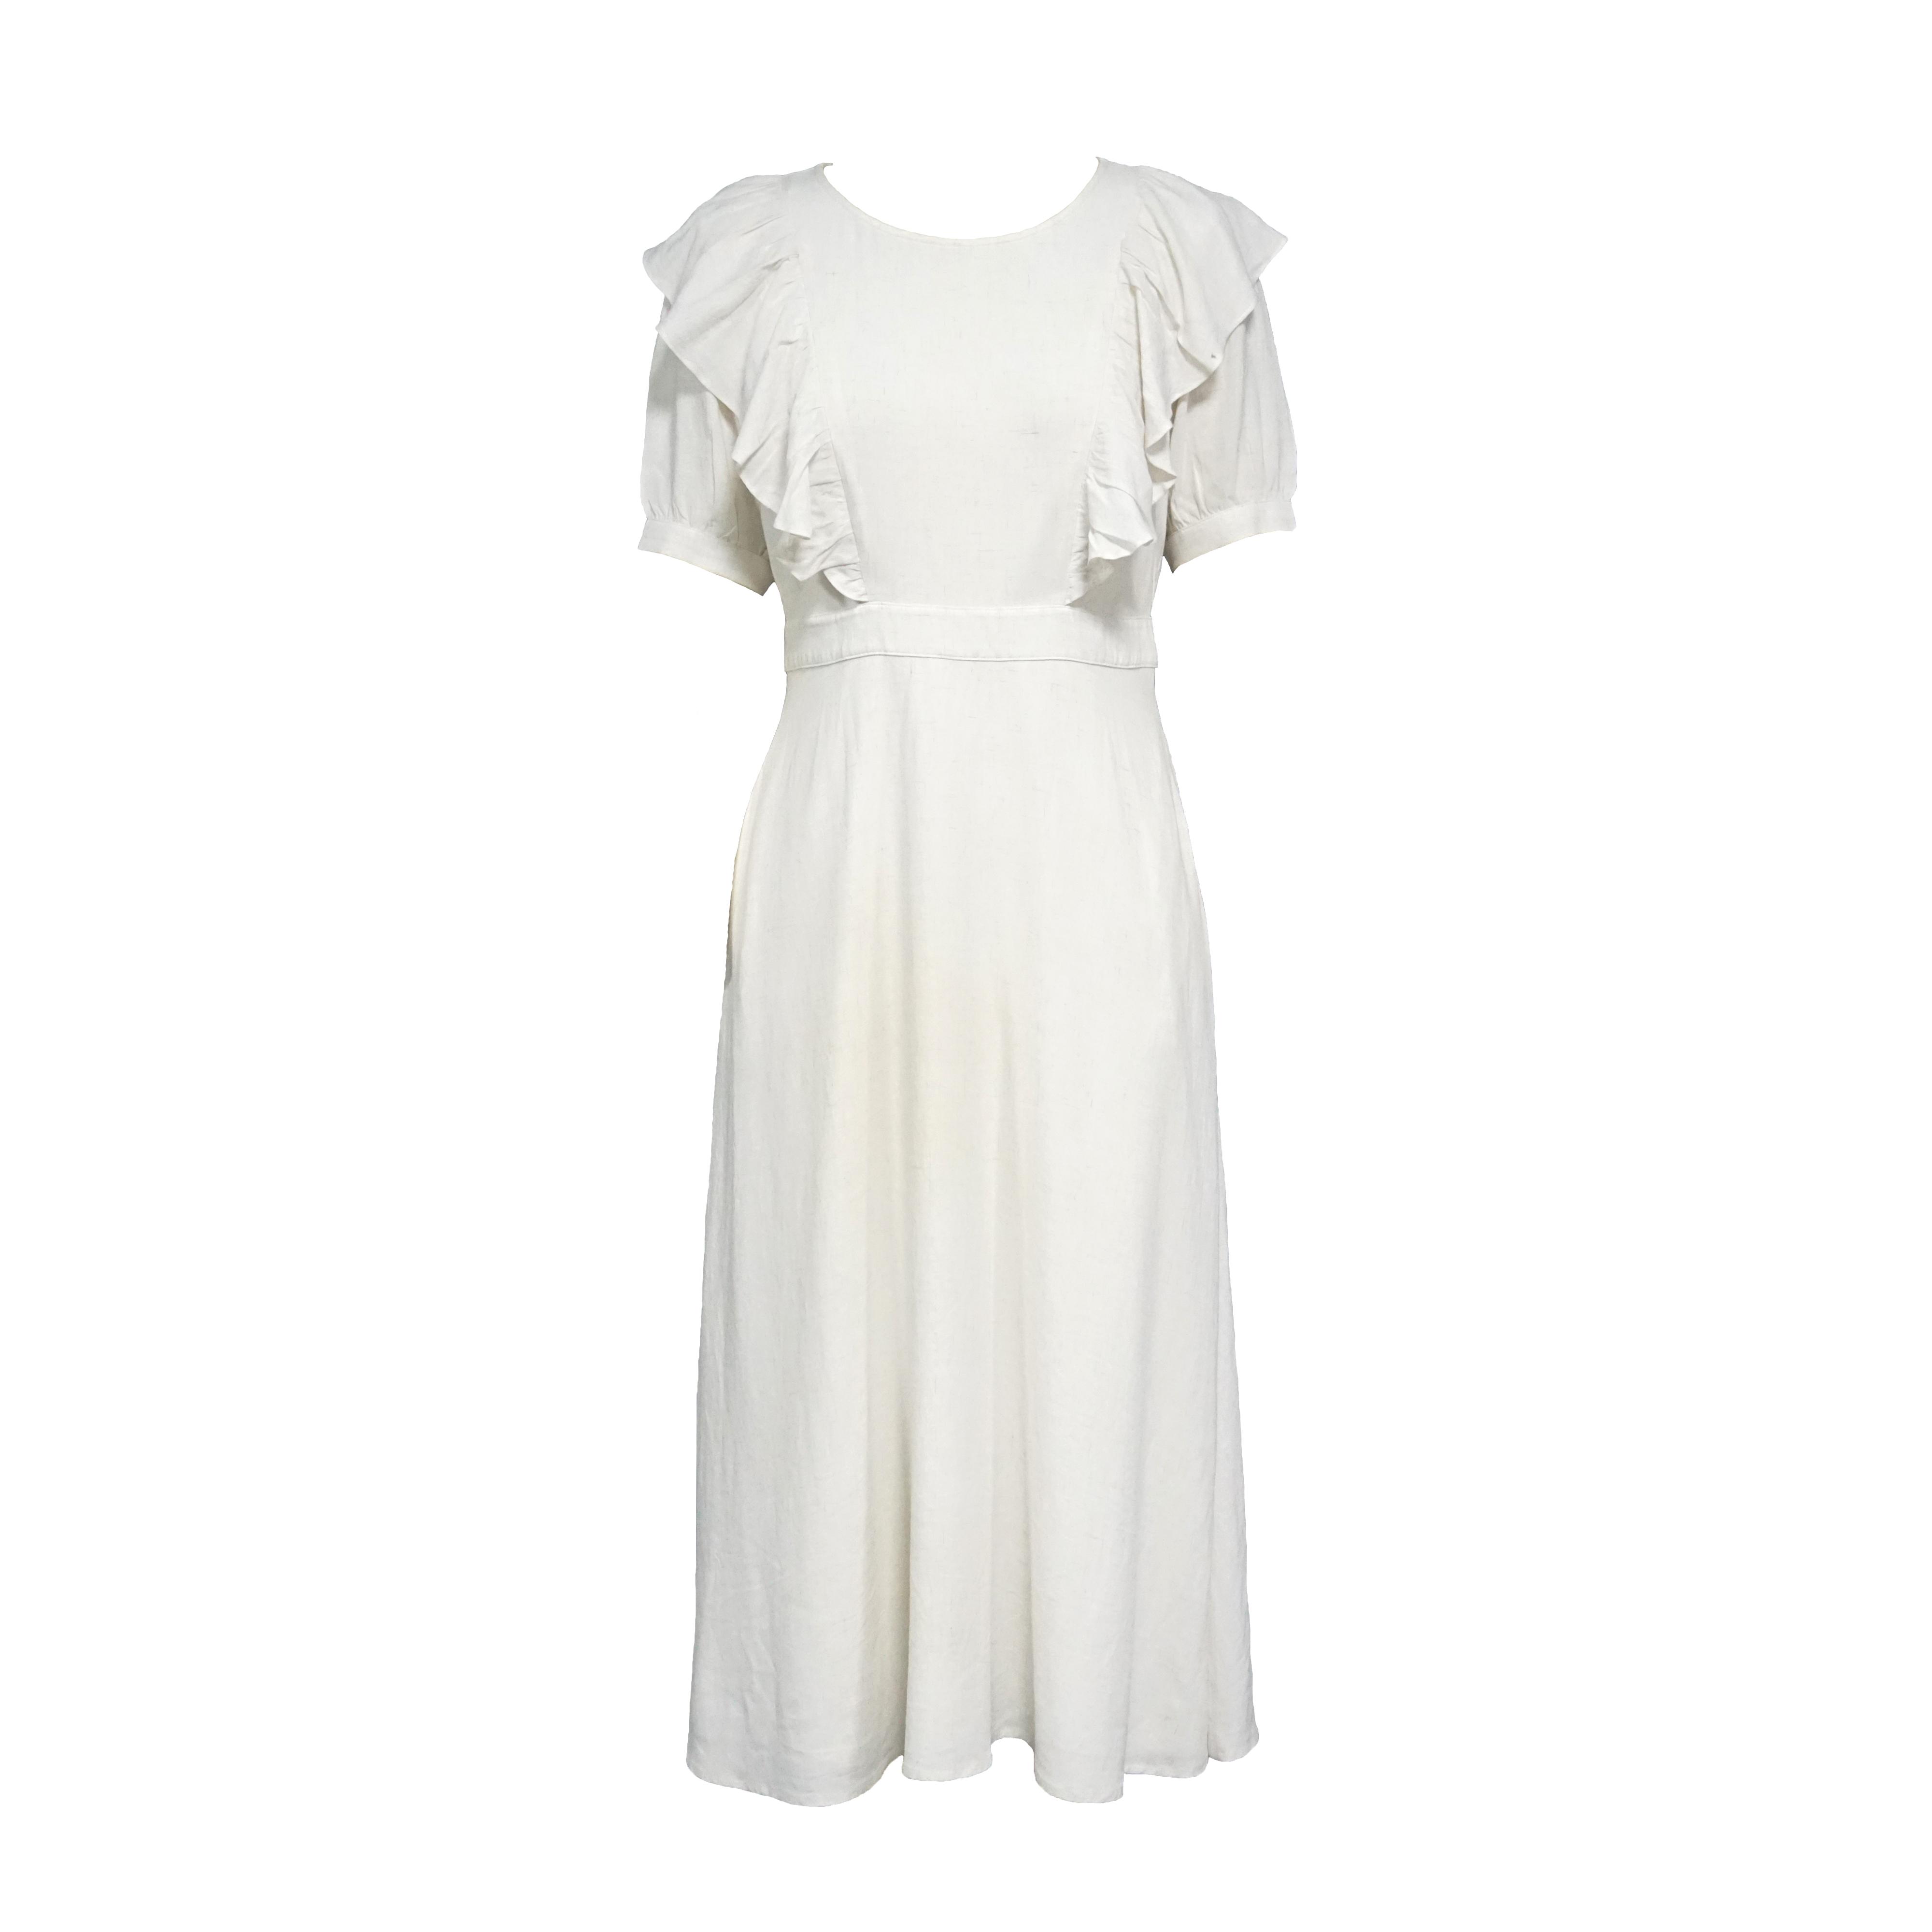 Λευκό φόρεμα γαλουχίας με στρογγυλή λαιμόκοψη